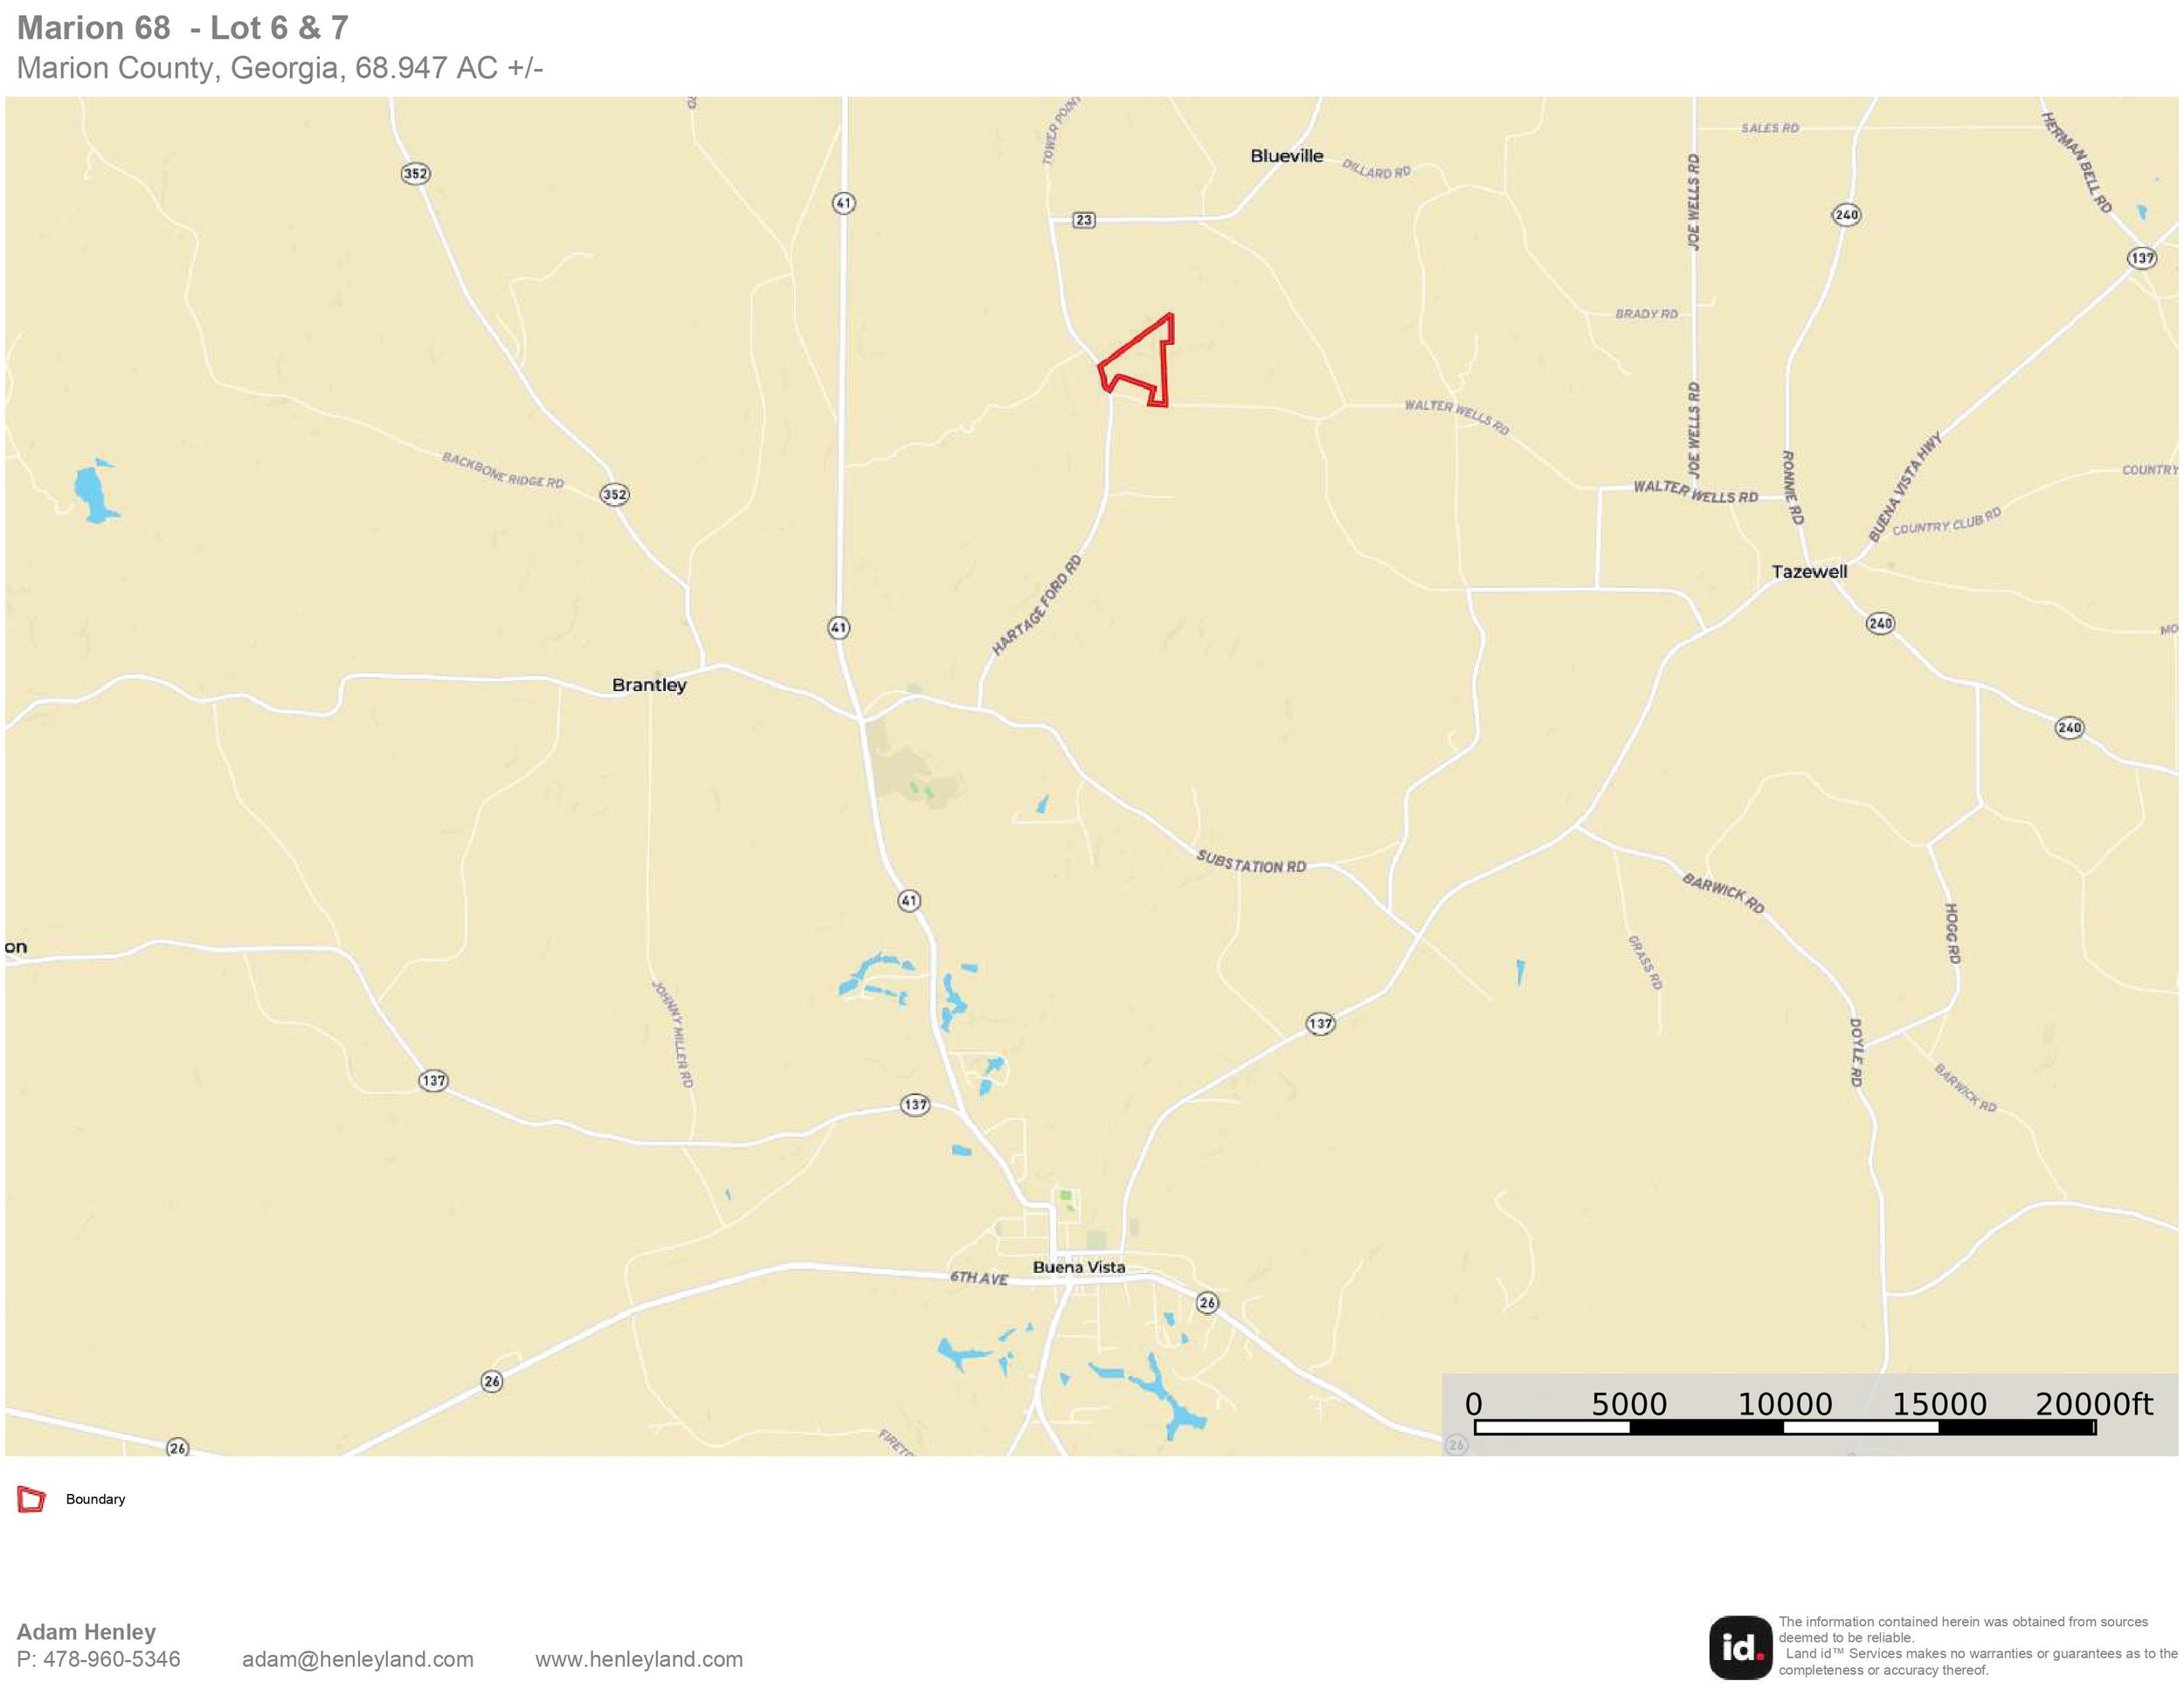 Marion 68 - Lot 6 & 7 - Location Map.jpg